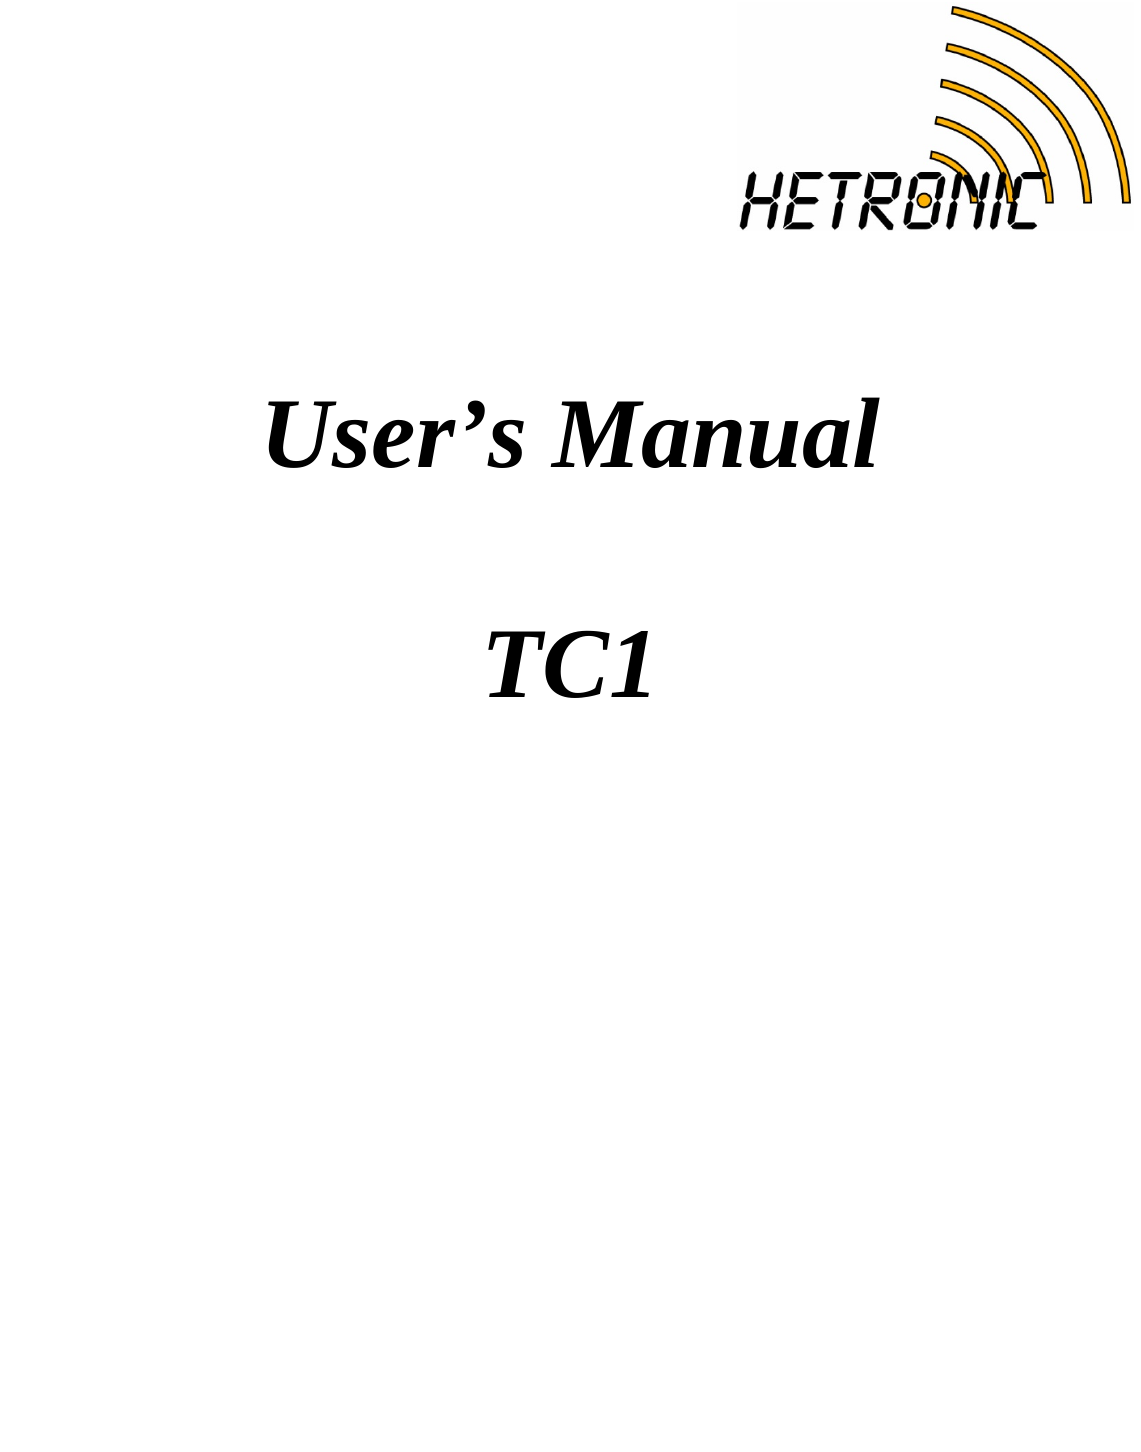   User’s Manual  TC1  